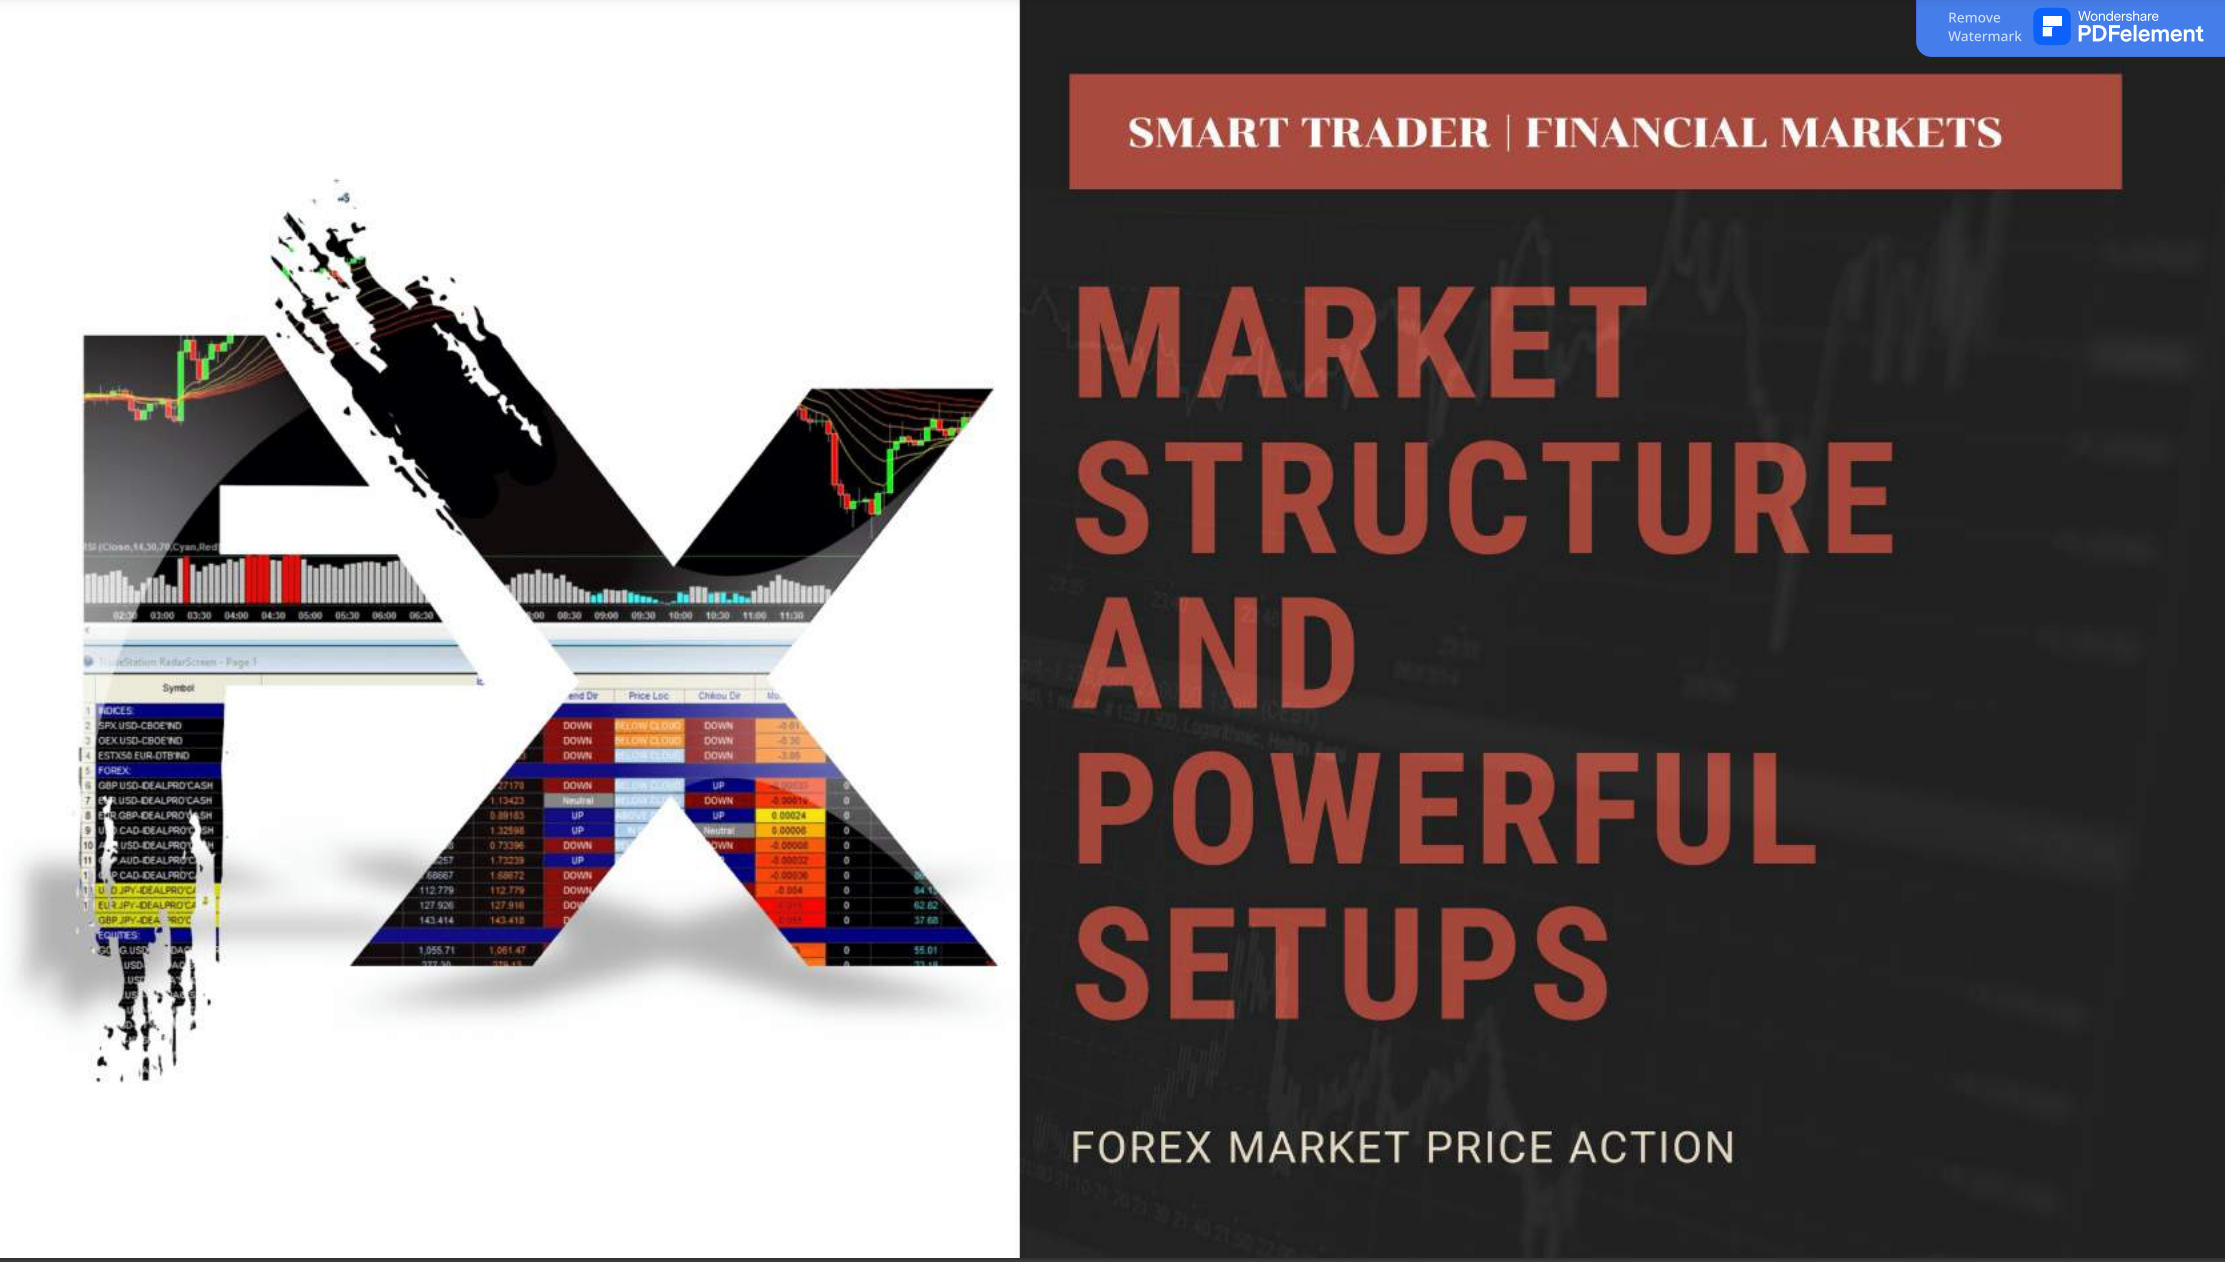 Forex Market Price Action.jpg